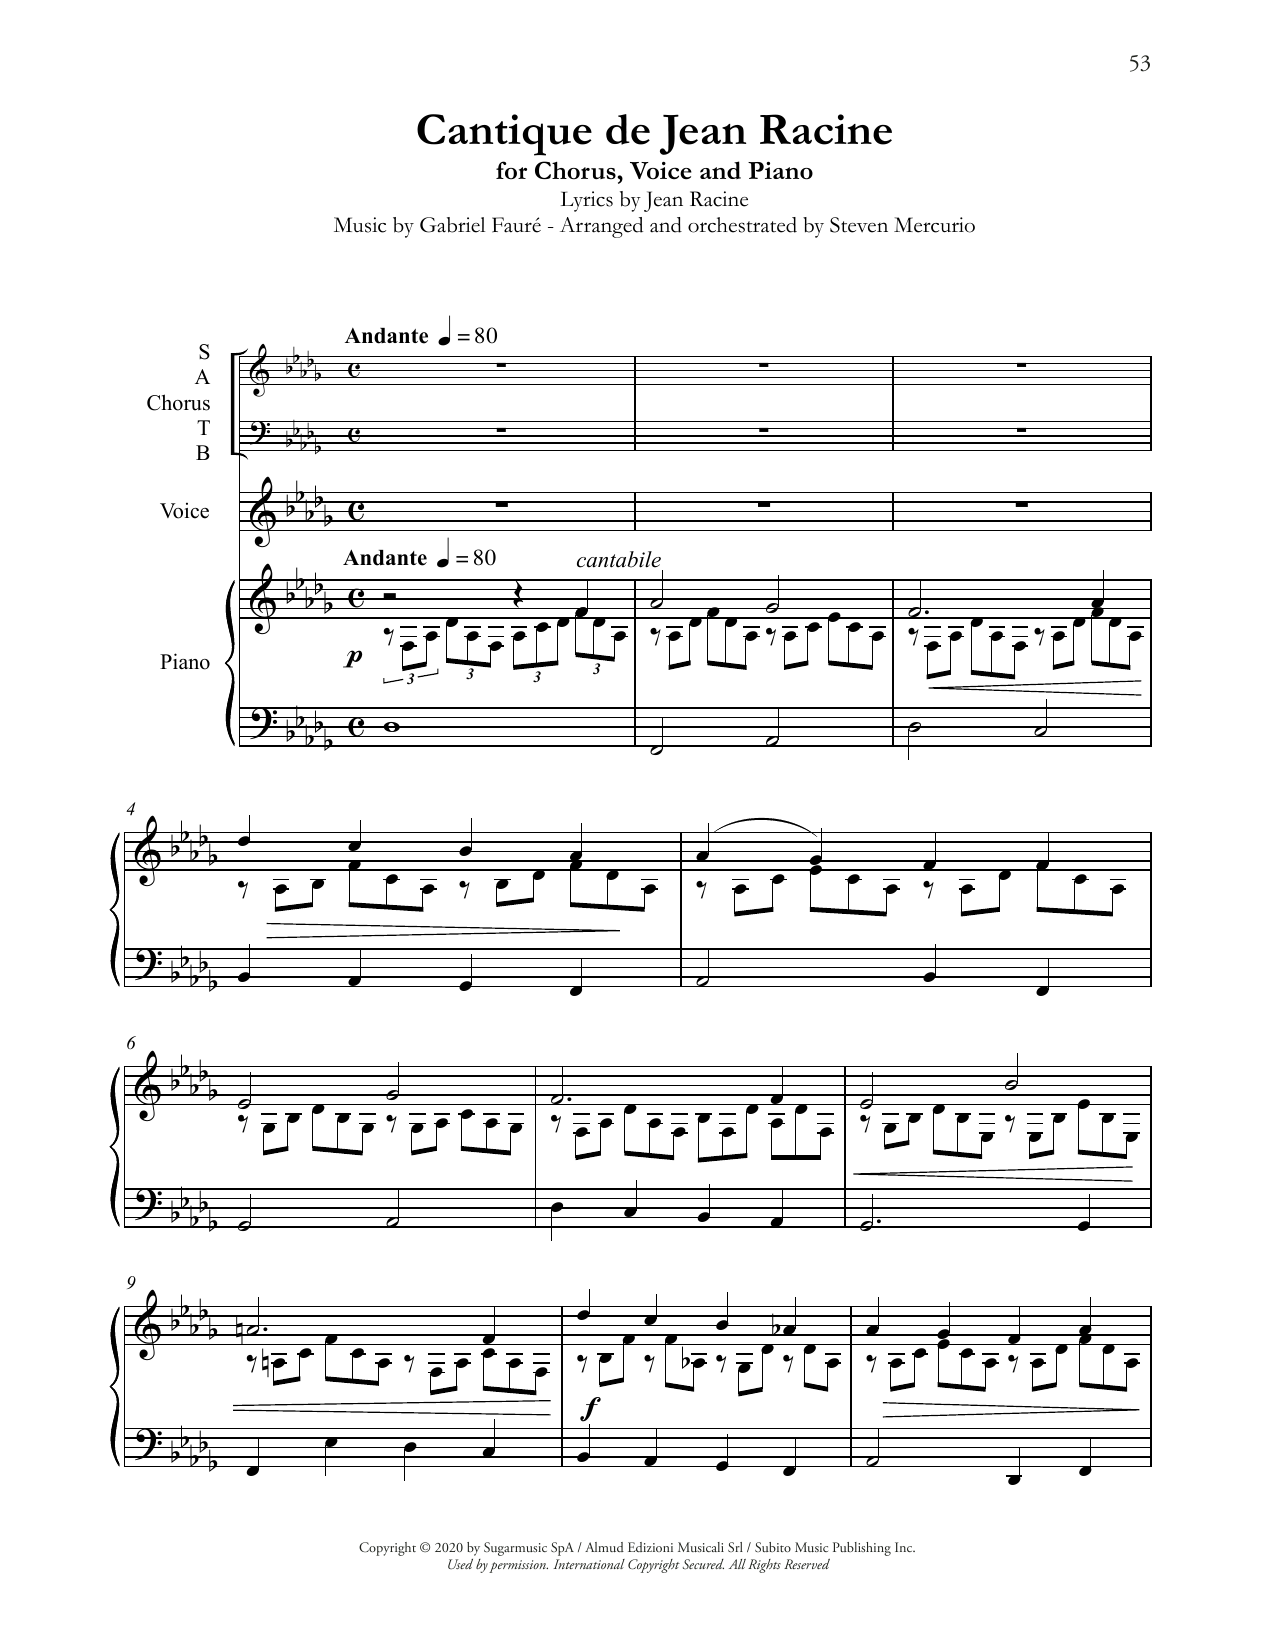 Andrea Bocelli Cantique de Jean Racine (arr. Steven Mercurio) Sheet Music Notes & Chords for SATB Choir - Download or Print PDF